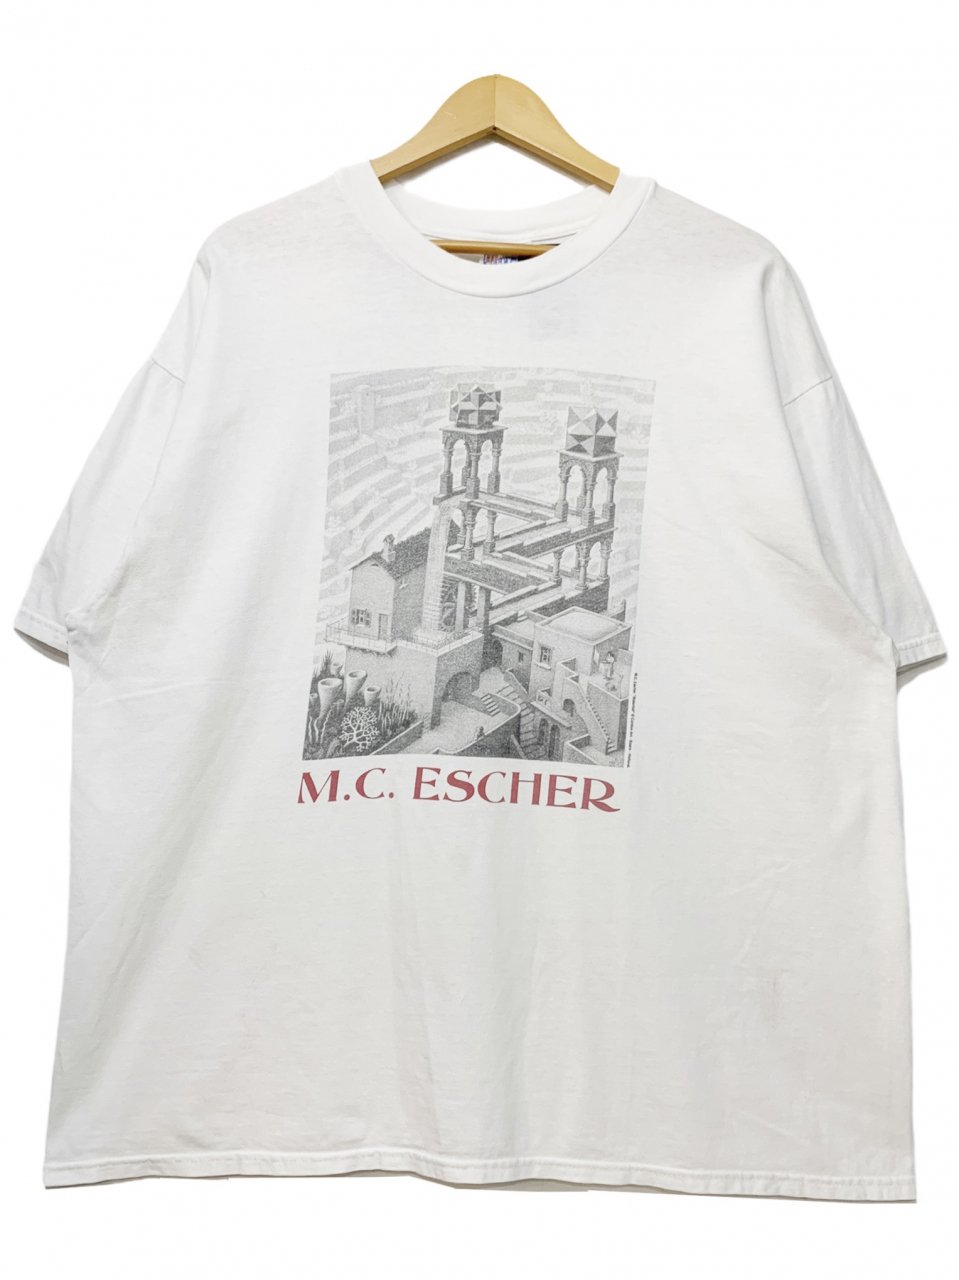 m.c escher エッシャー Tシャツ 90s アート目立った傷や汚れなし